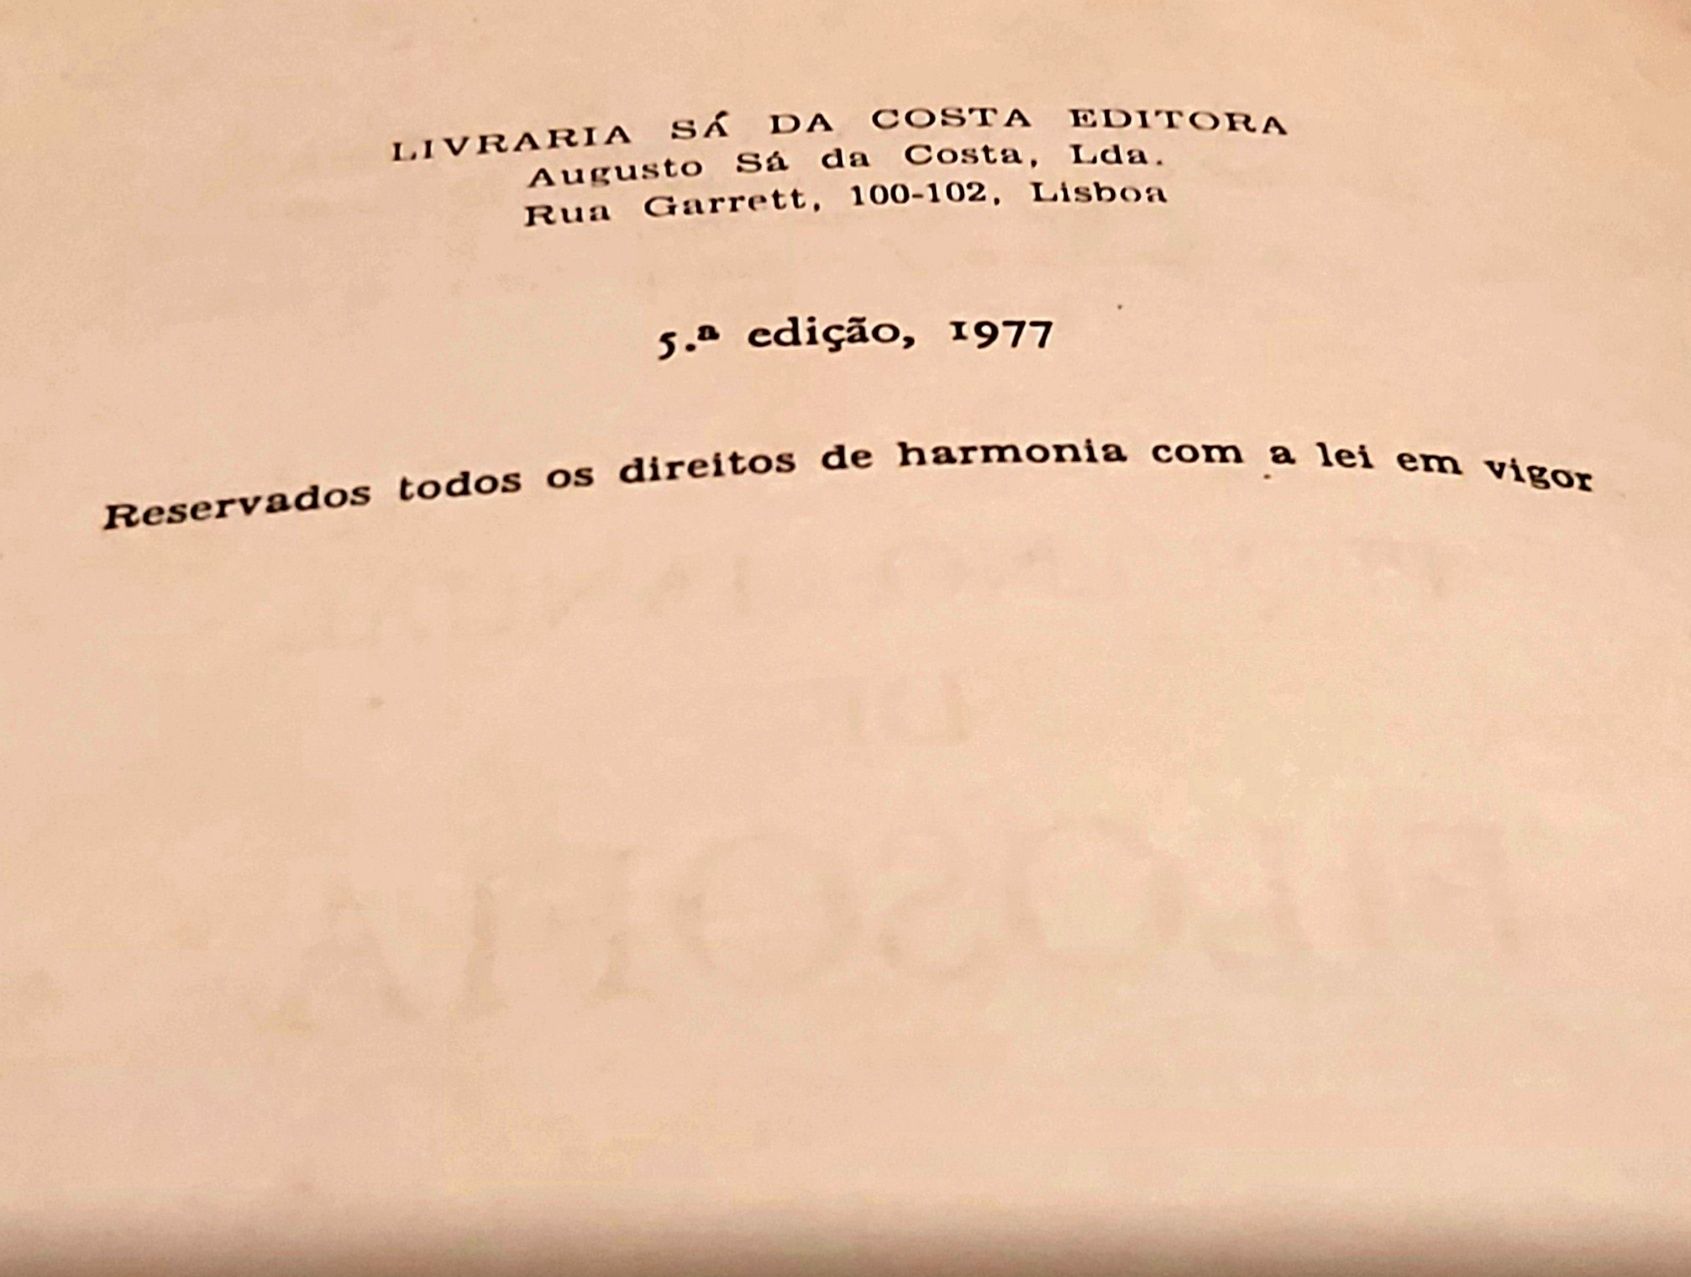 Livro Pequeno Manual de Filosofia. Autor: Vasco Magalhães Vilhena

Aut